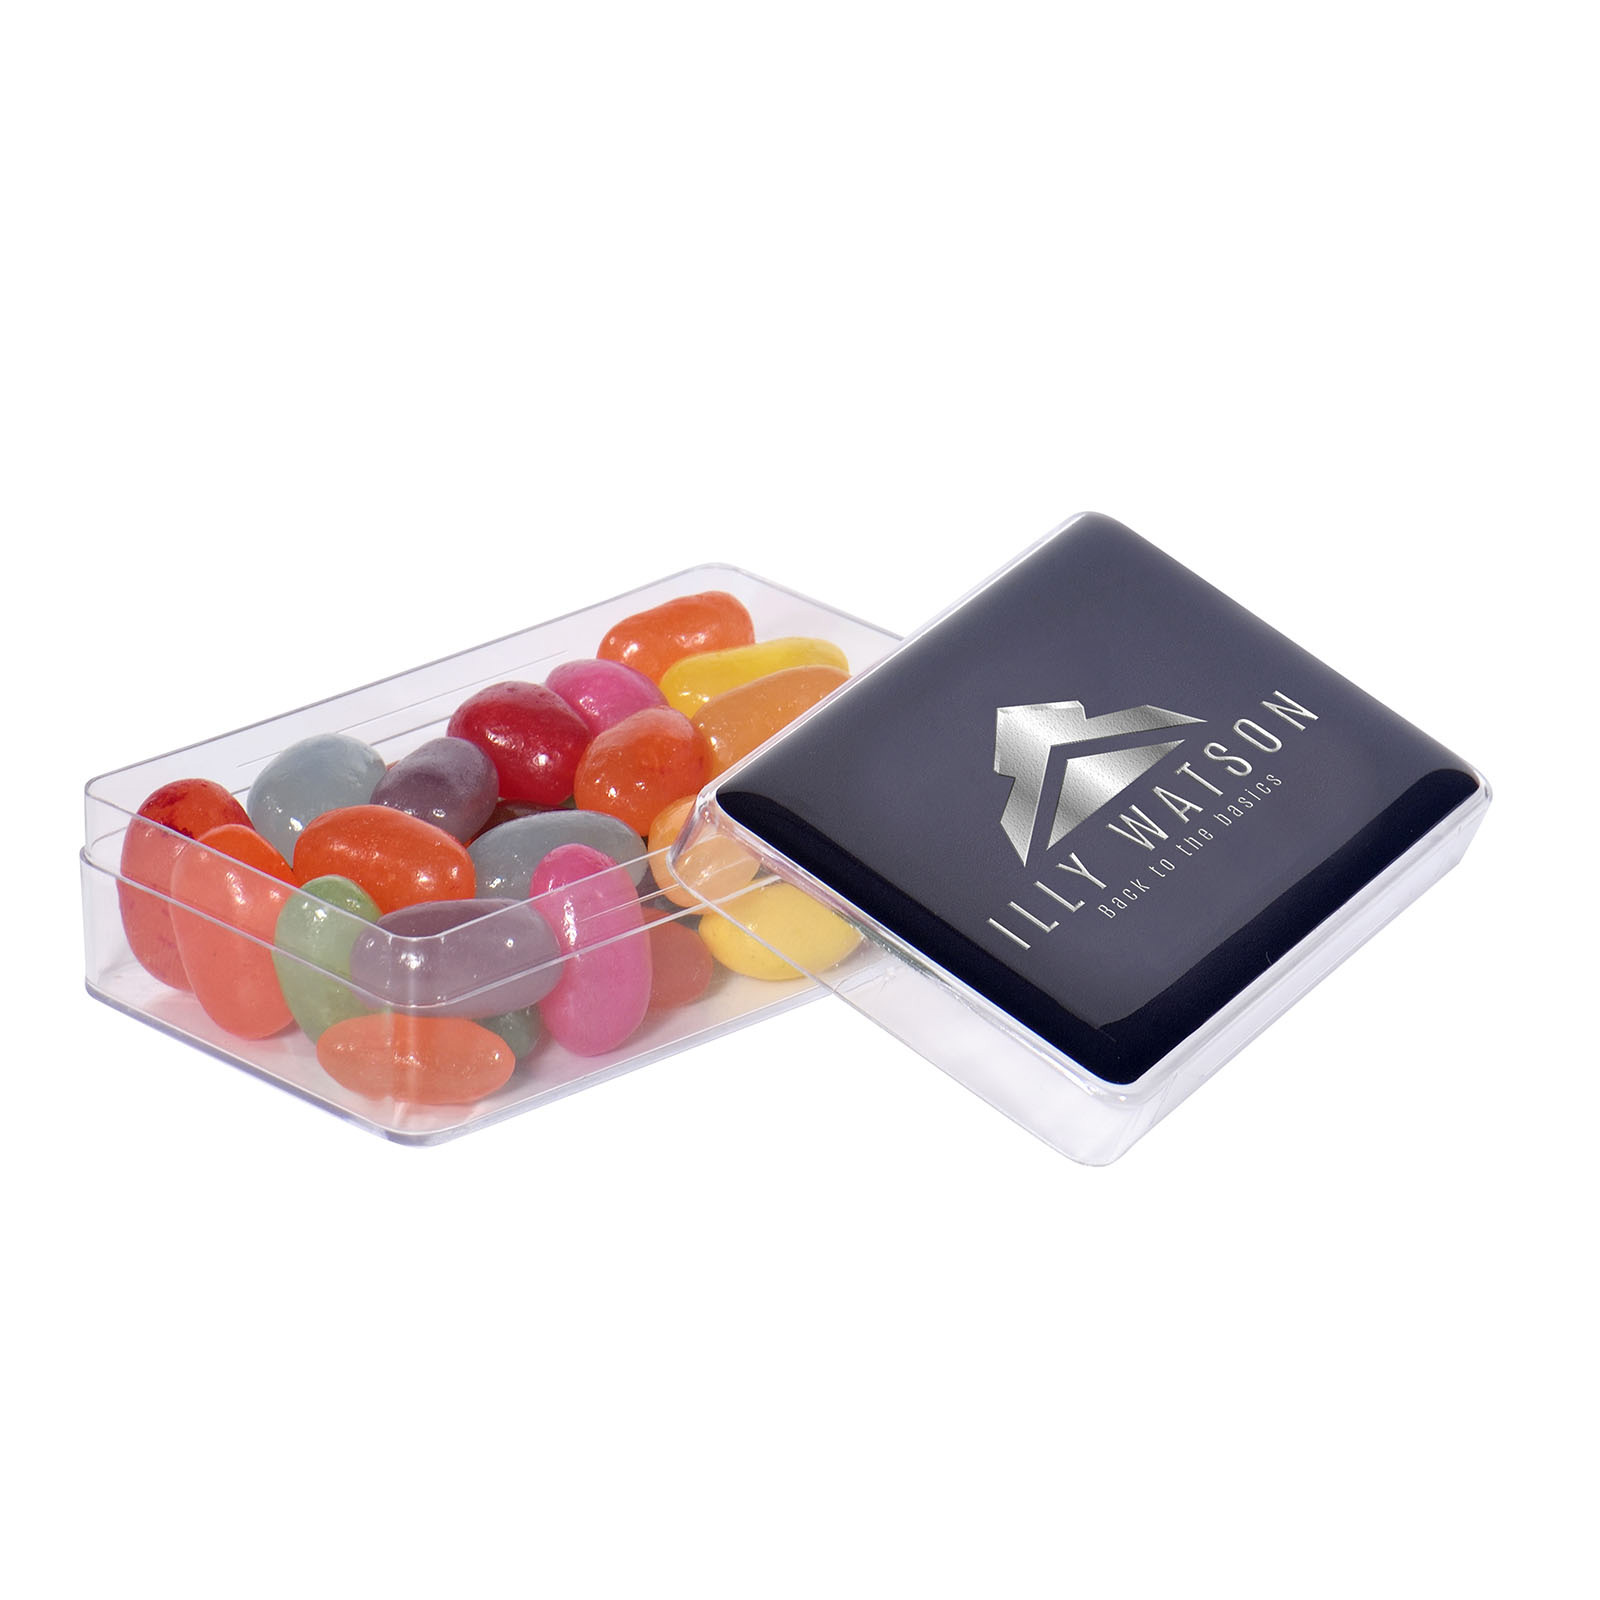 Maxi Box con Doming a colori pieni e riempita con circa 50g di Jellybeans - Pontremoli